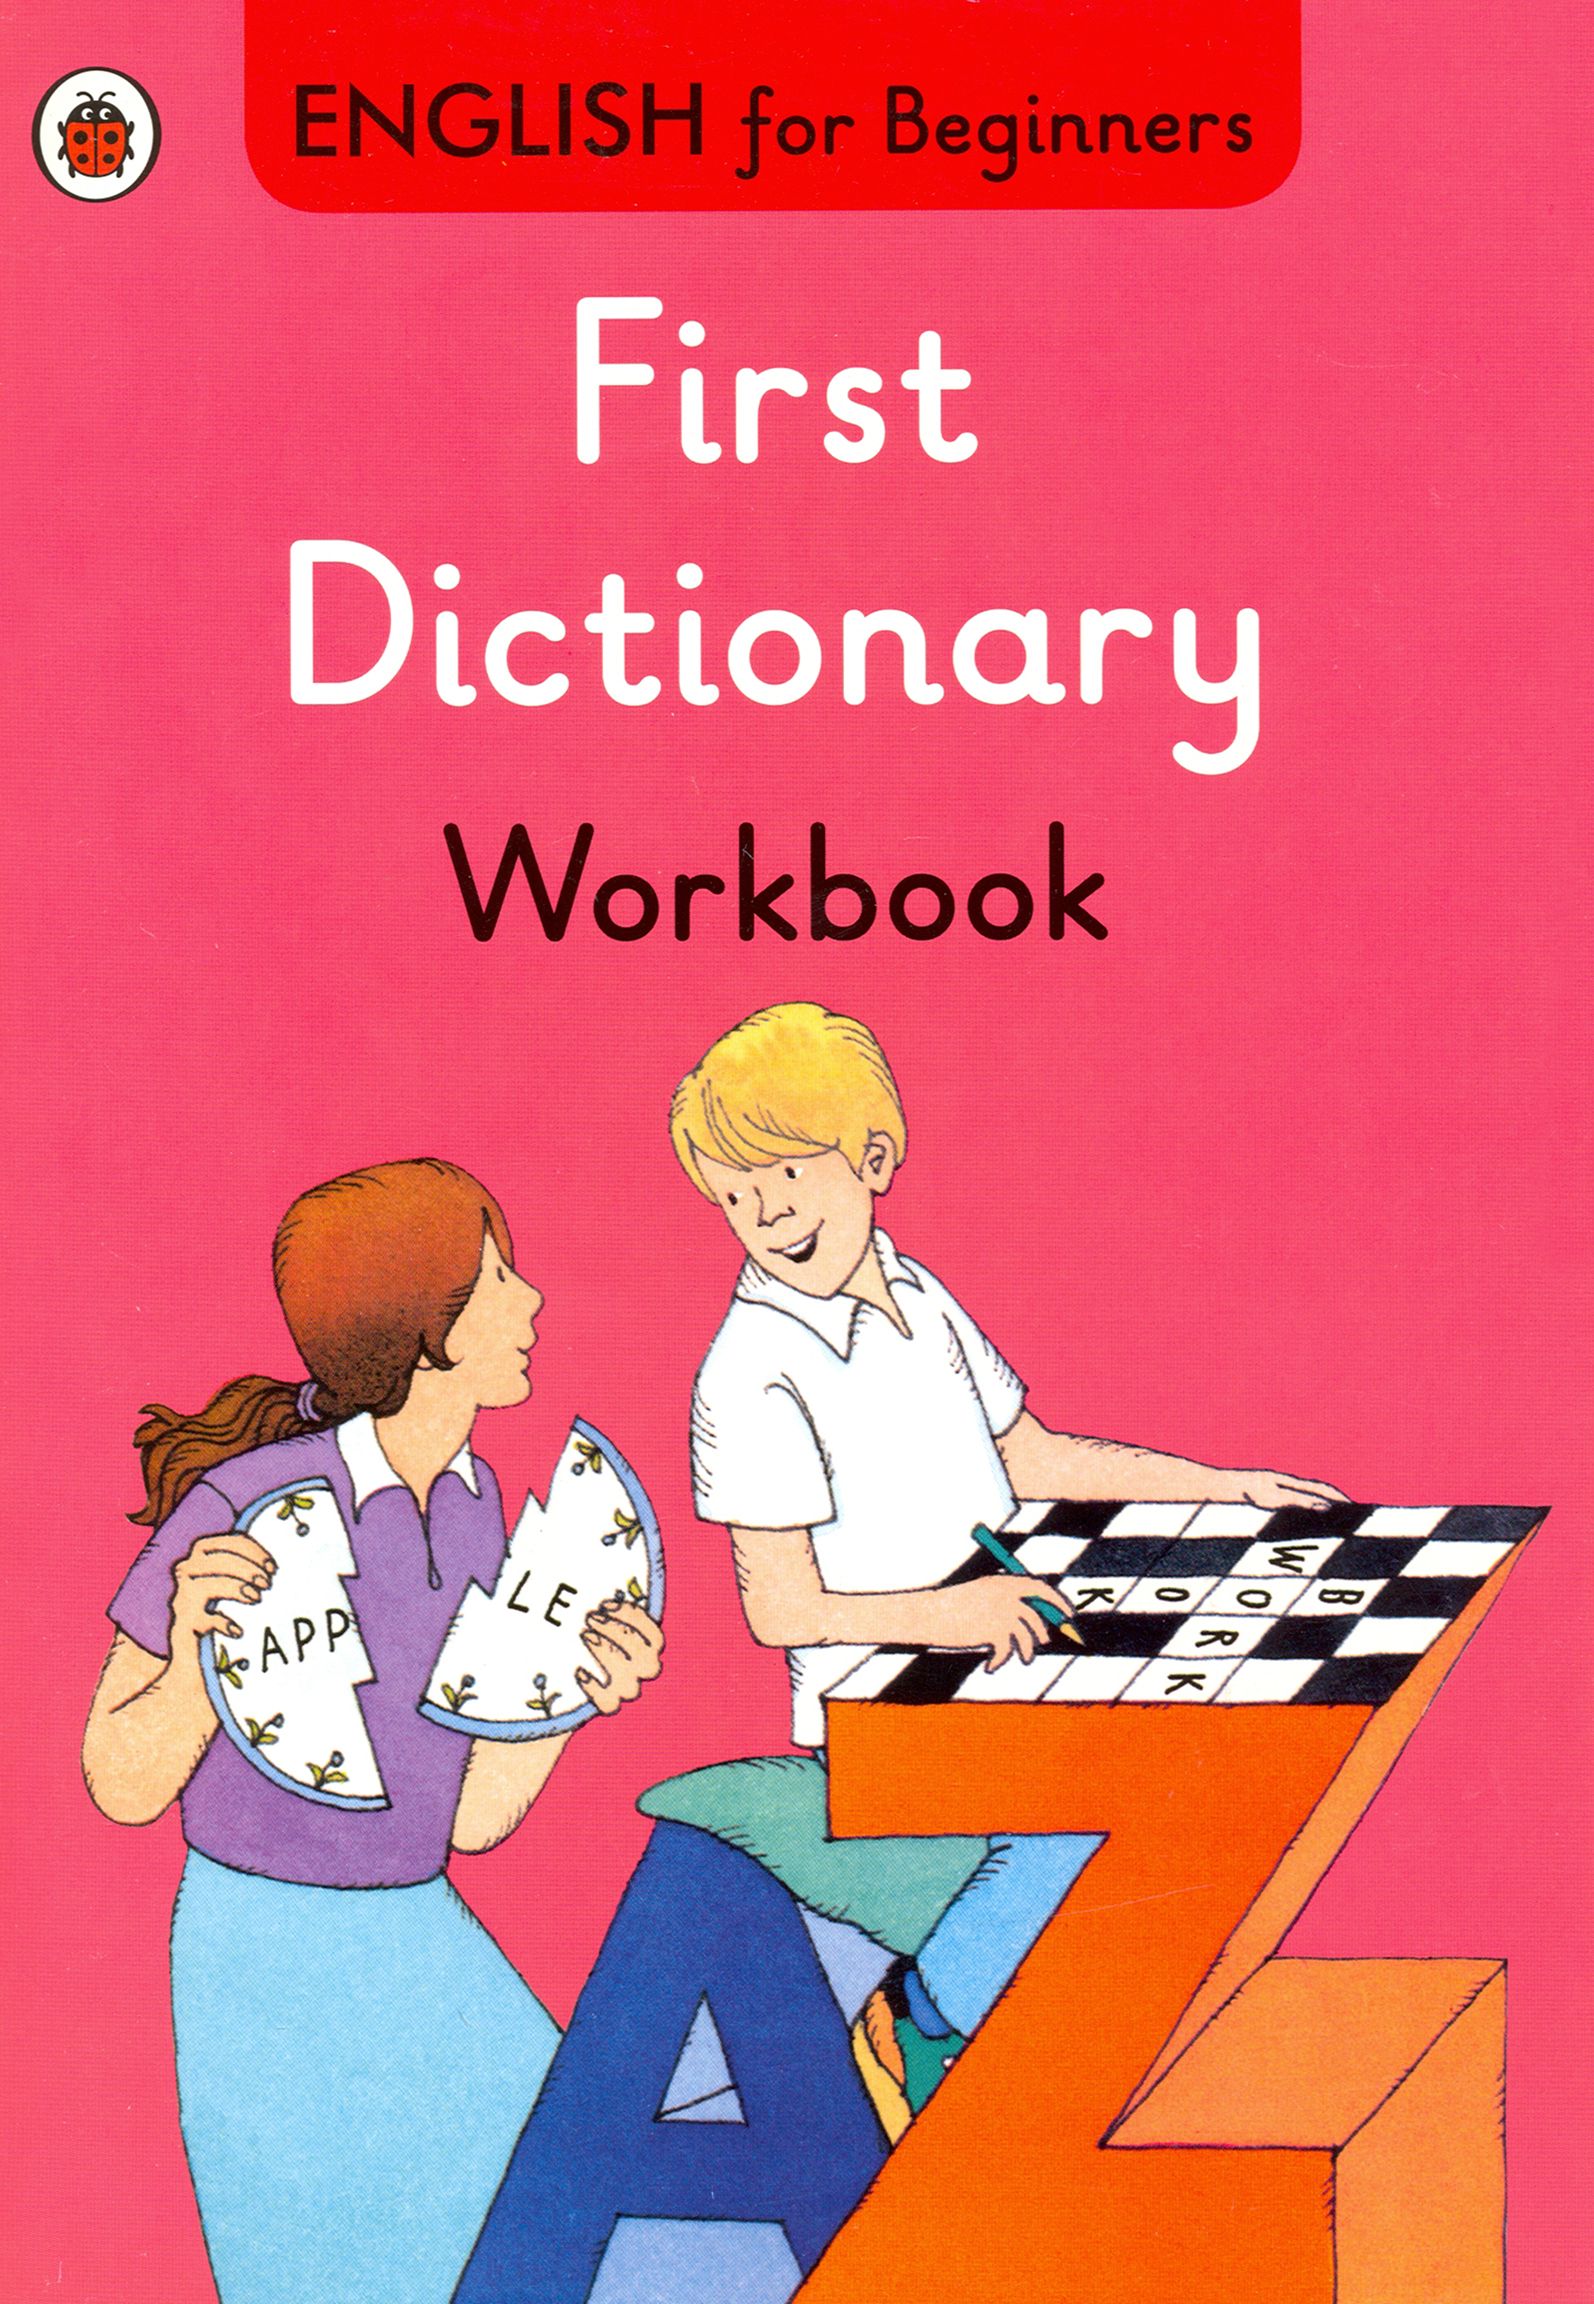 First dictionary. Dictionary for Beginners. Beginner Dictionary. Картинки которые можно описать на английском.